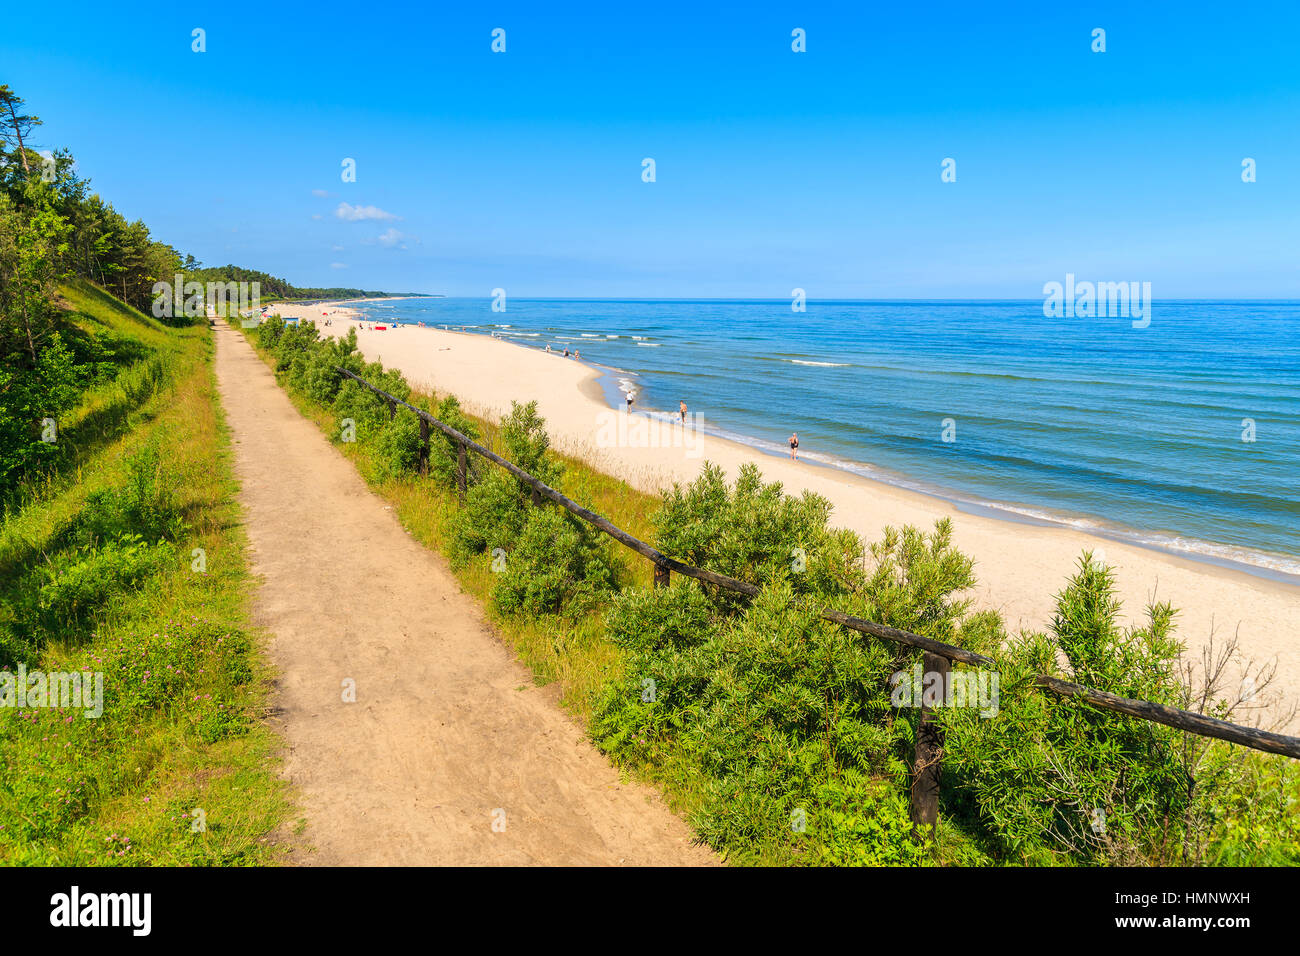 Sentier du littoral le long de plage de Jastrzebia Gora, mer Baltique, Pologne Banque D'Images